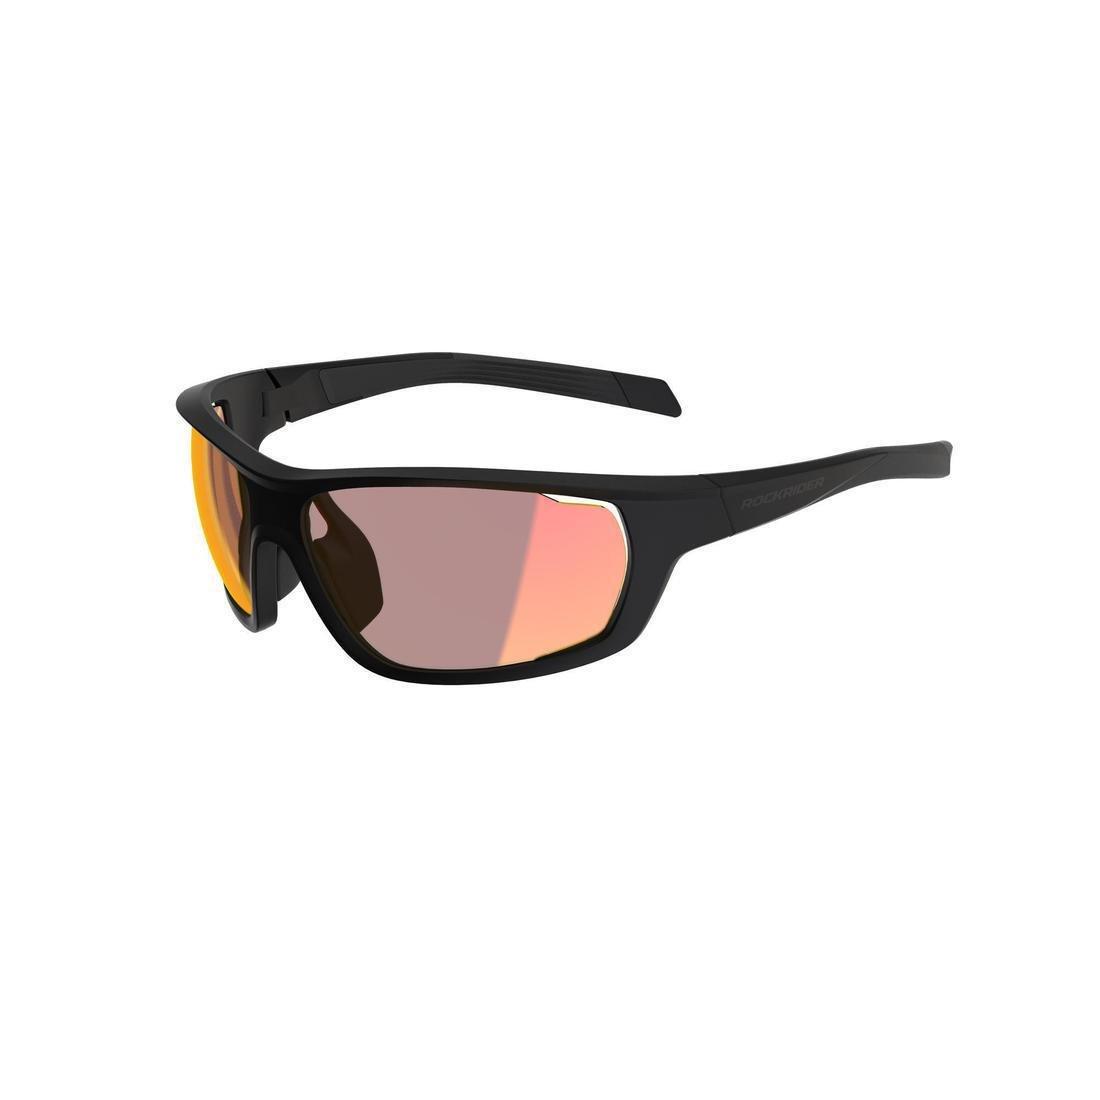 ROCKRIDER - Photochromic Mountain Bike Glasses - Cat 1-3, Black